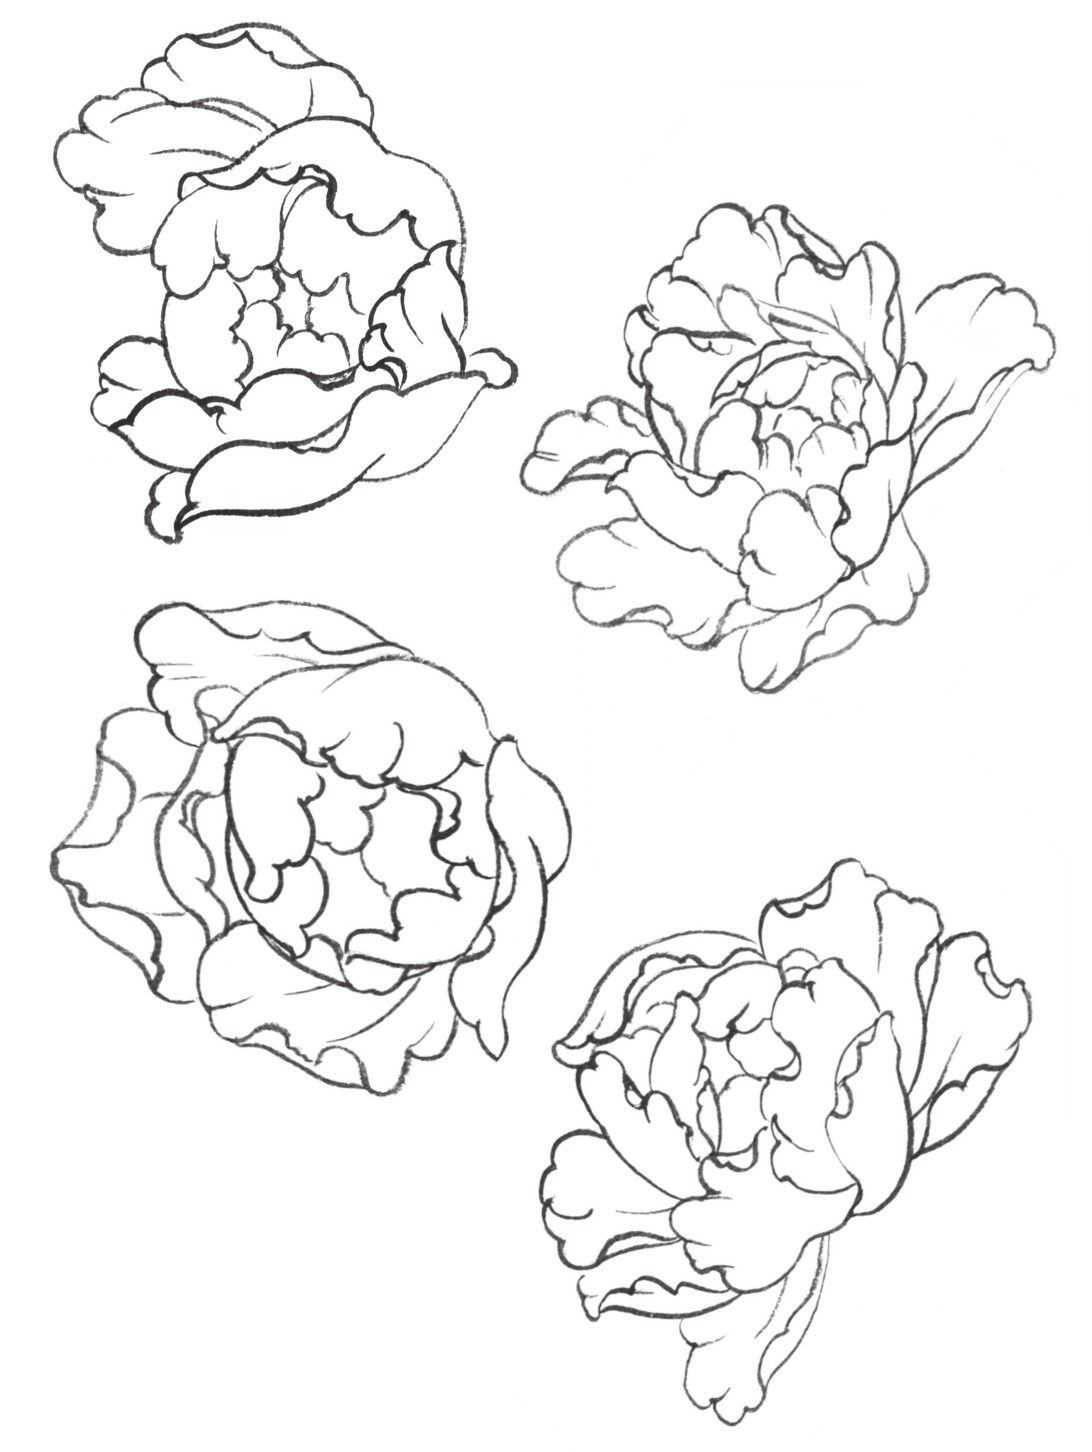 牡丹花花头的形态雍容华贵,花瓣层叠,有单瓣,复瓣,重瓣等不同的形态